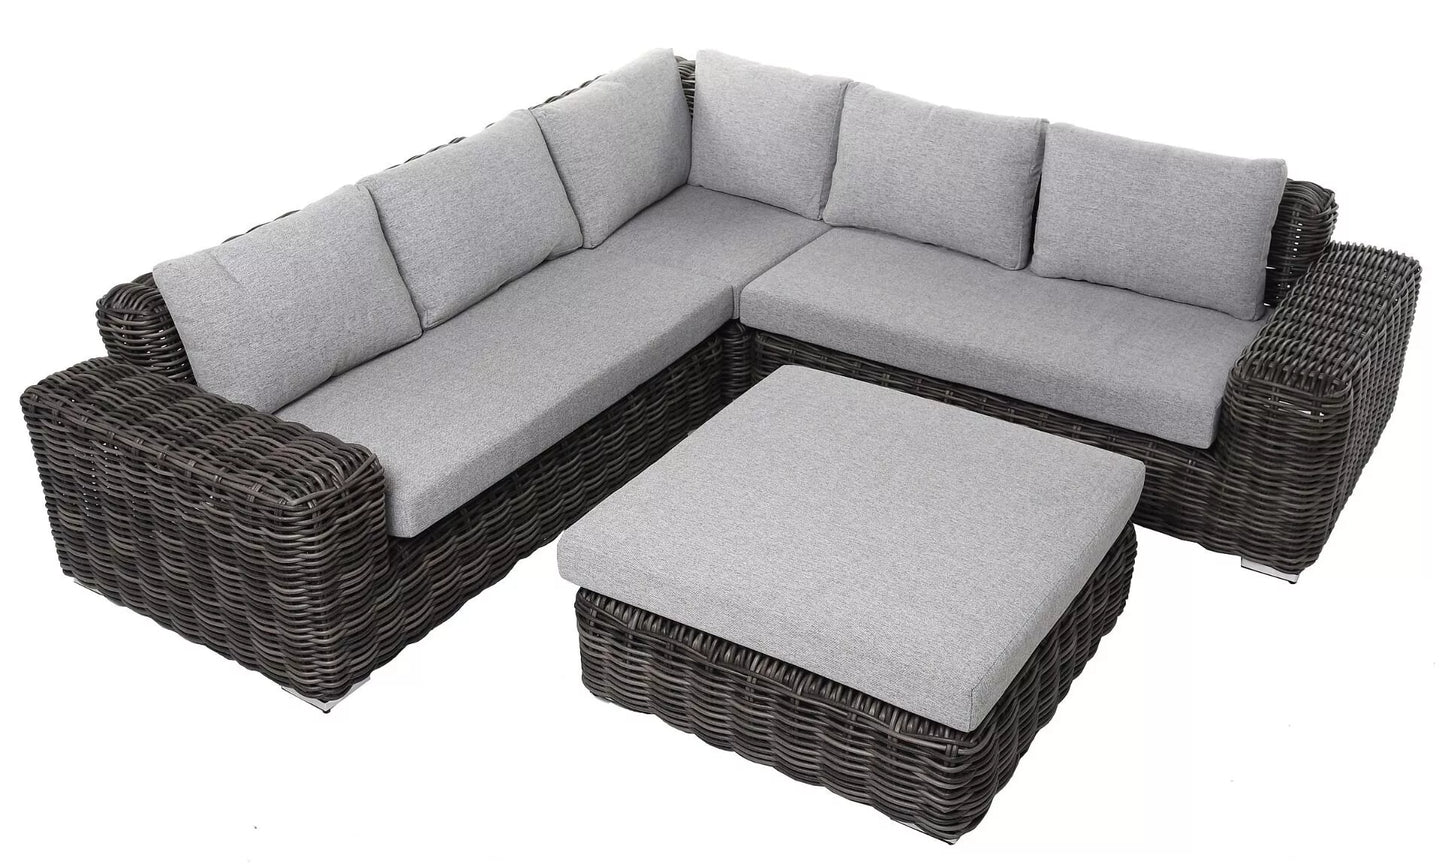 Lauko baldų komplektas Maje Grey, ekoratanas, 267x267x73cm, pilkos spalvos